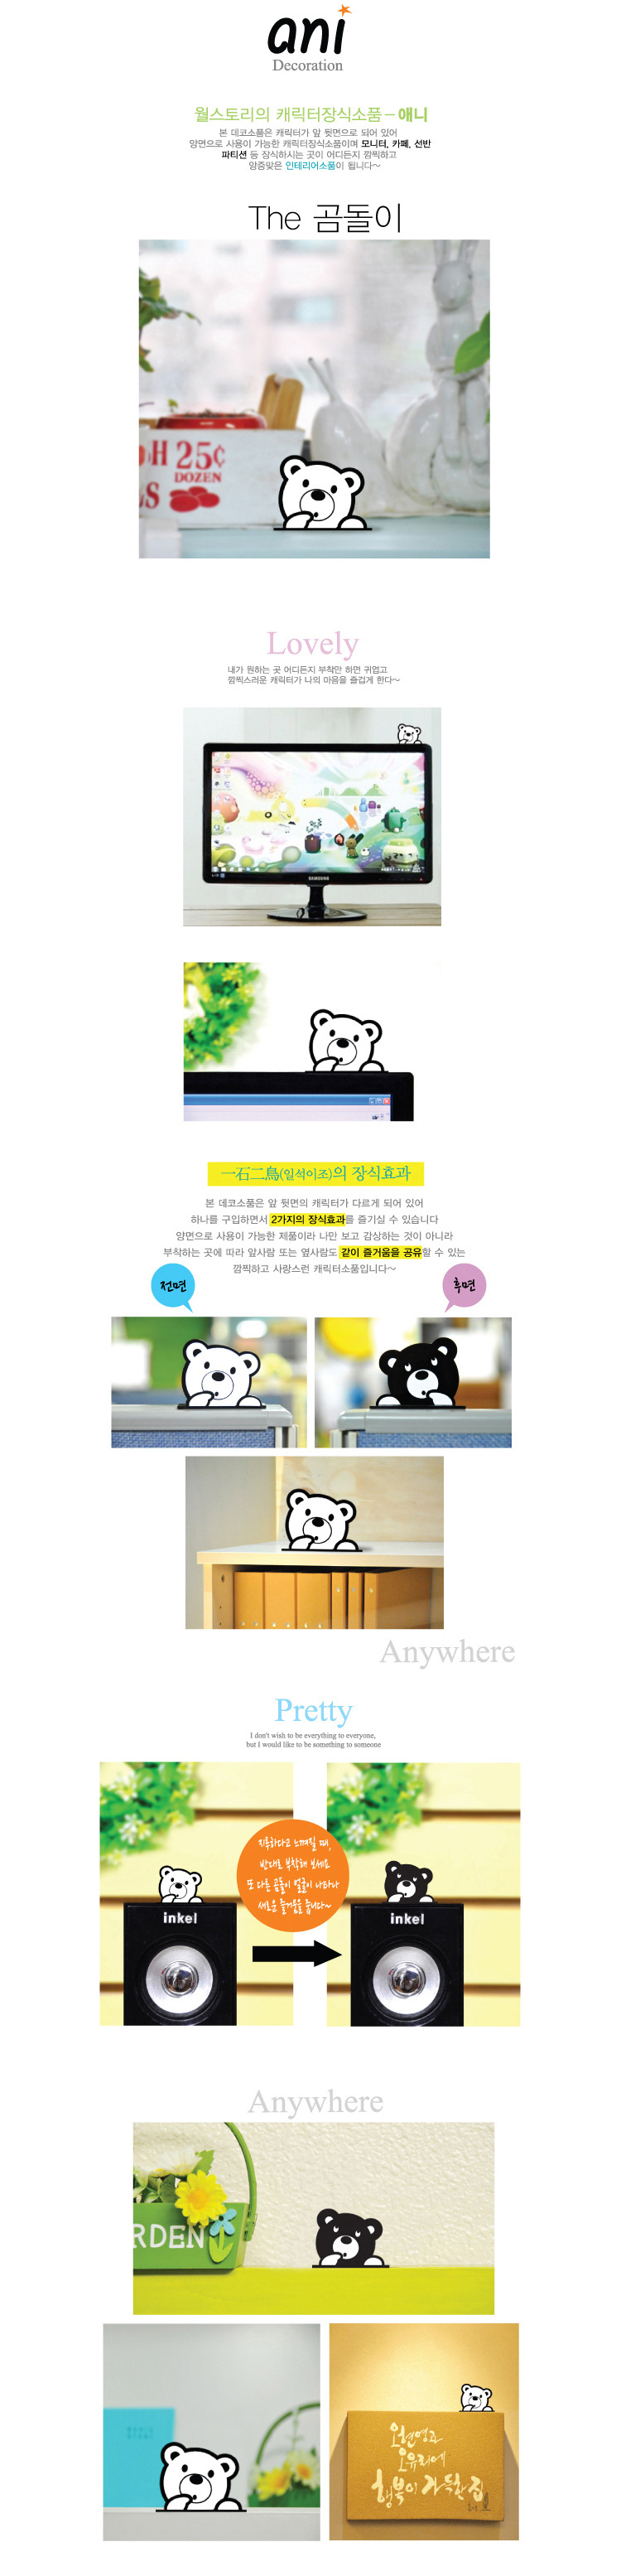 韓國wallstory 可愛動物桌面可貼家居擺件電腦家庭裝飾小飾品